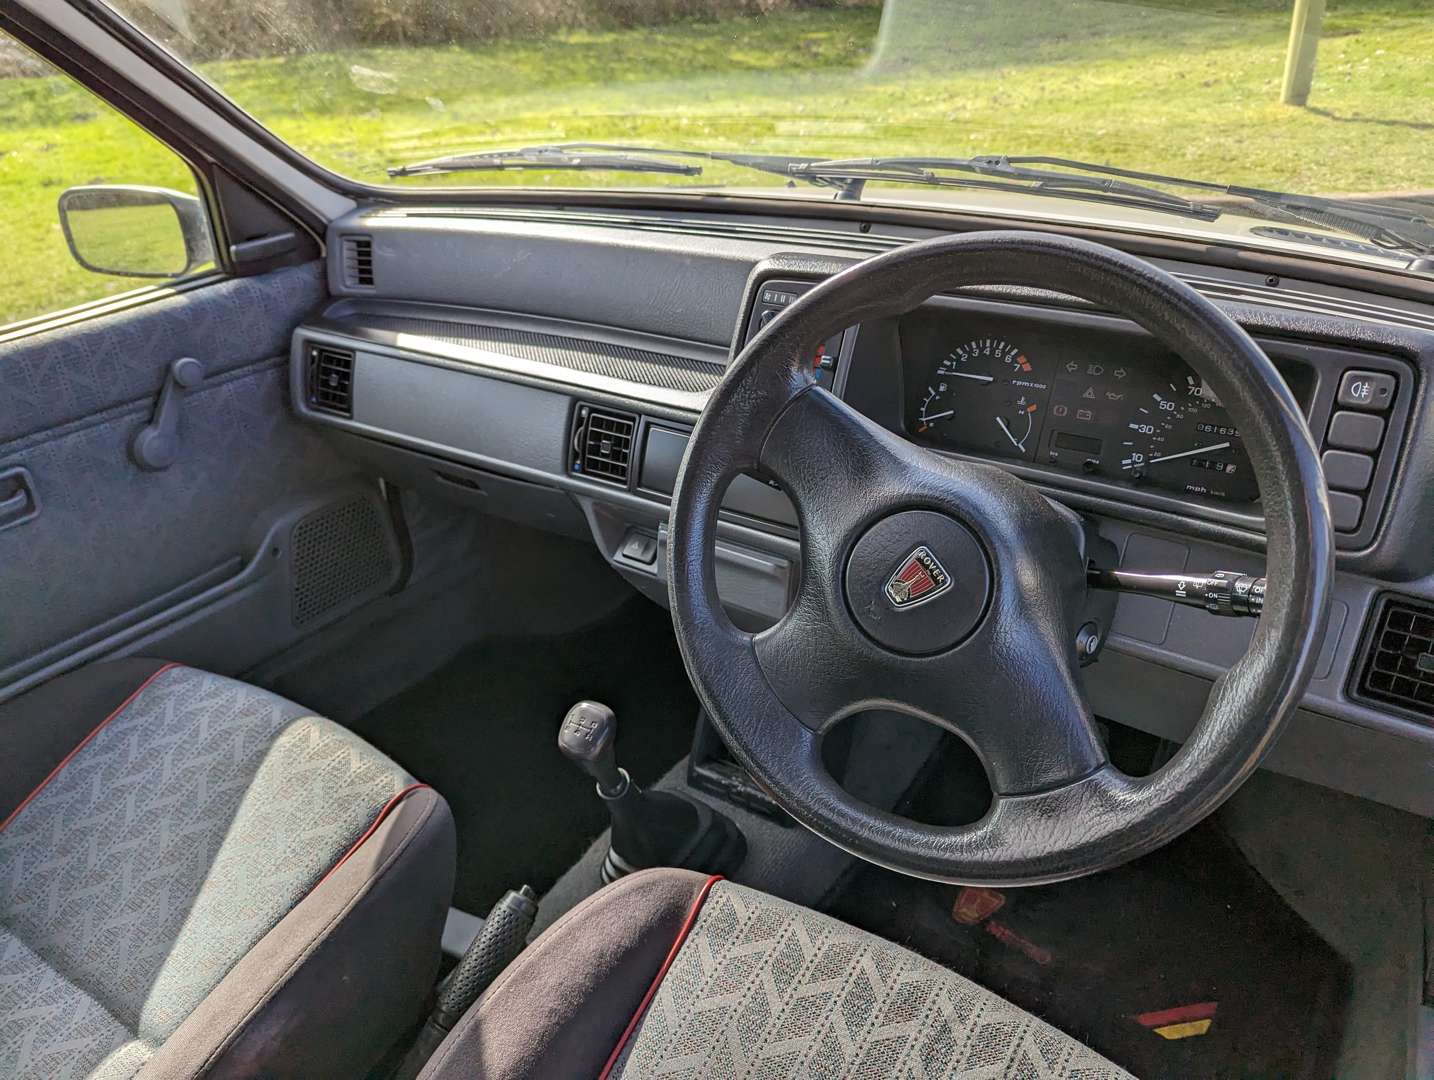 <p>1996 ROVER 114 GTA</p>